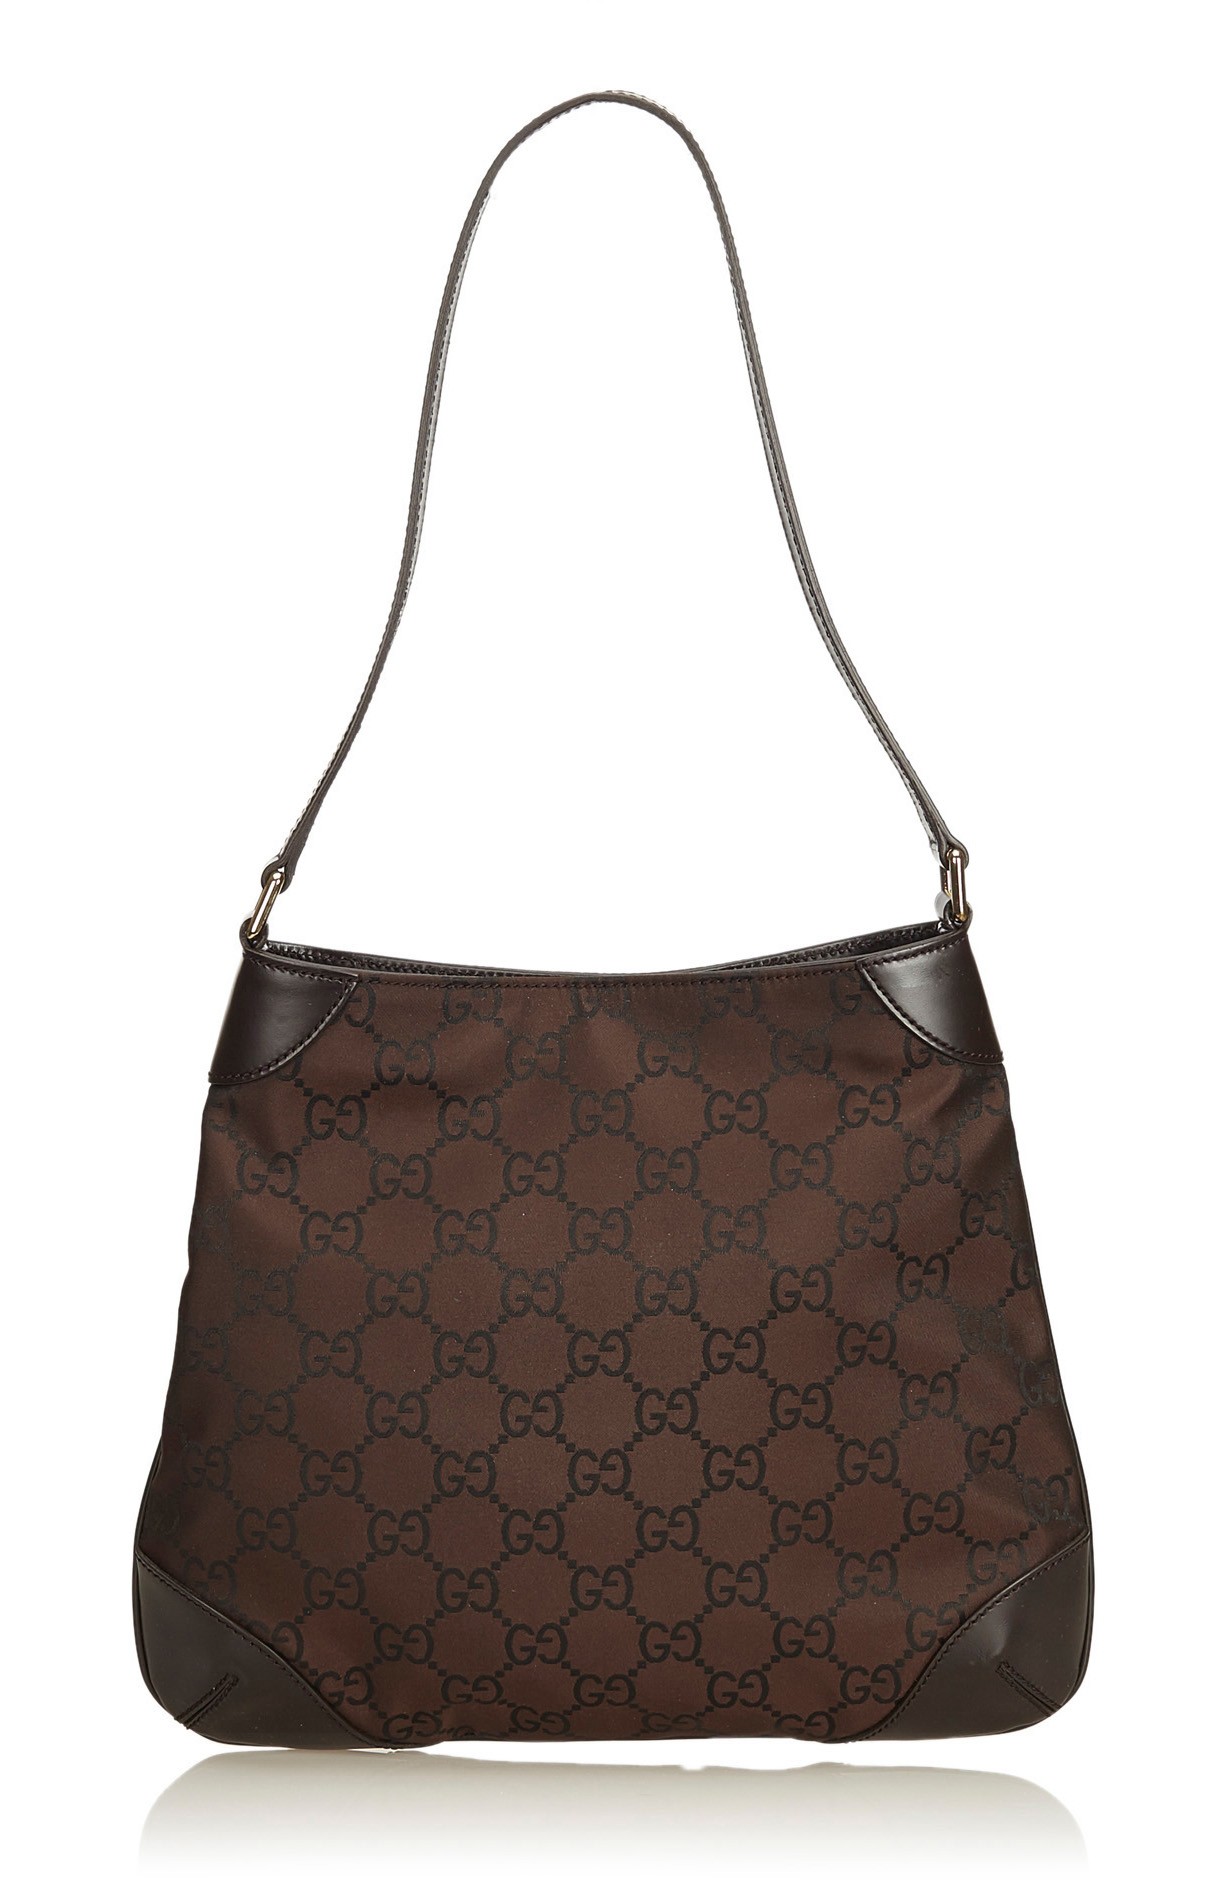 Gucci Vintage - GG Canvas Shoulder Bag - Brown - Leather Handbag